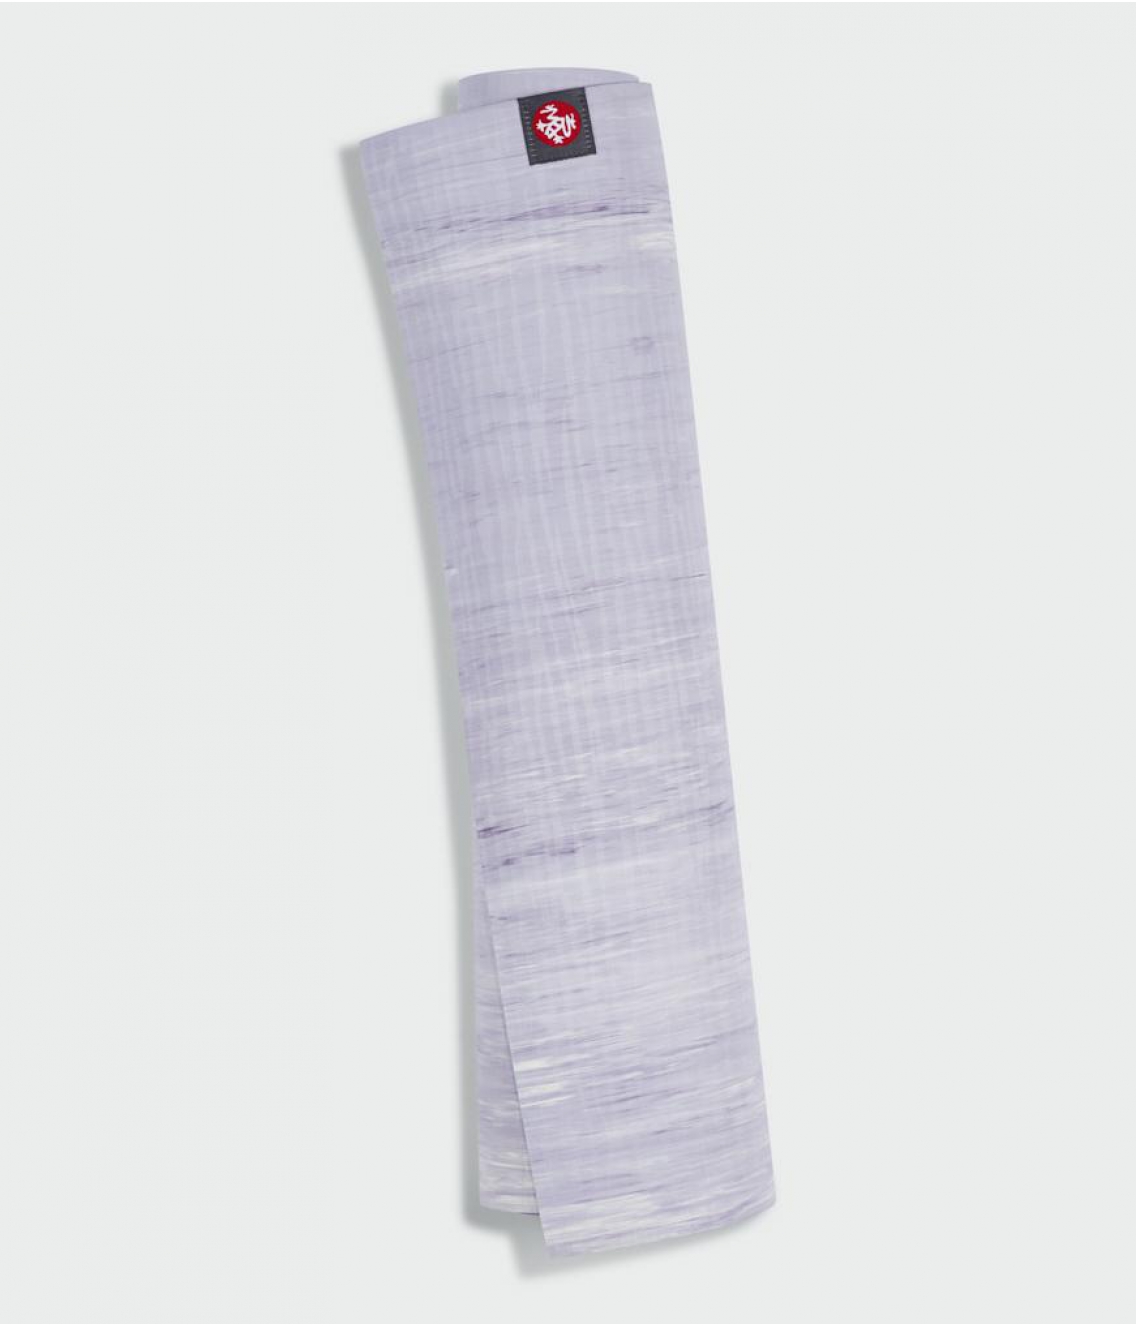 Профессиональный каучуковый коврик для йоги Manduka eKO lite 180*61*0,4 см - Cosmic Sky Marbled (Limited Edition)